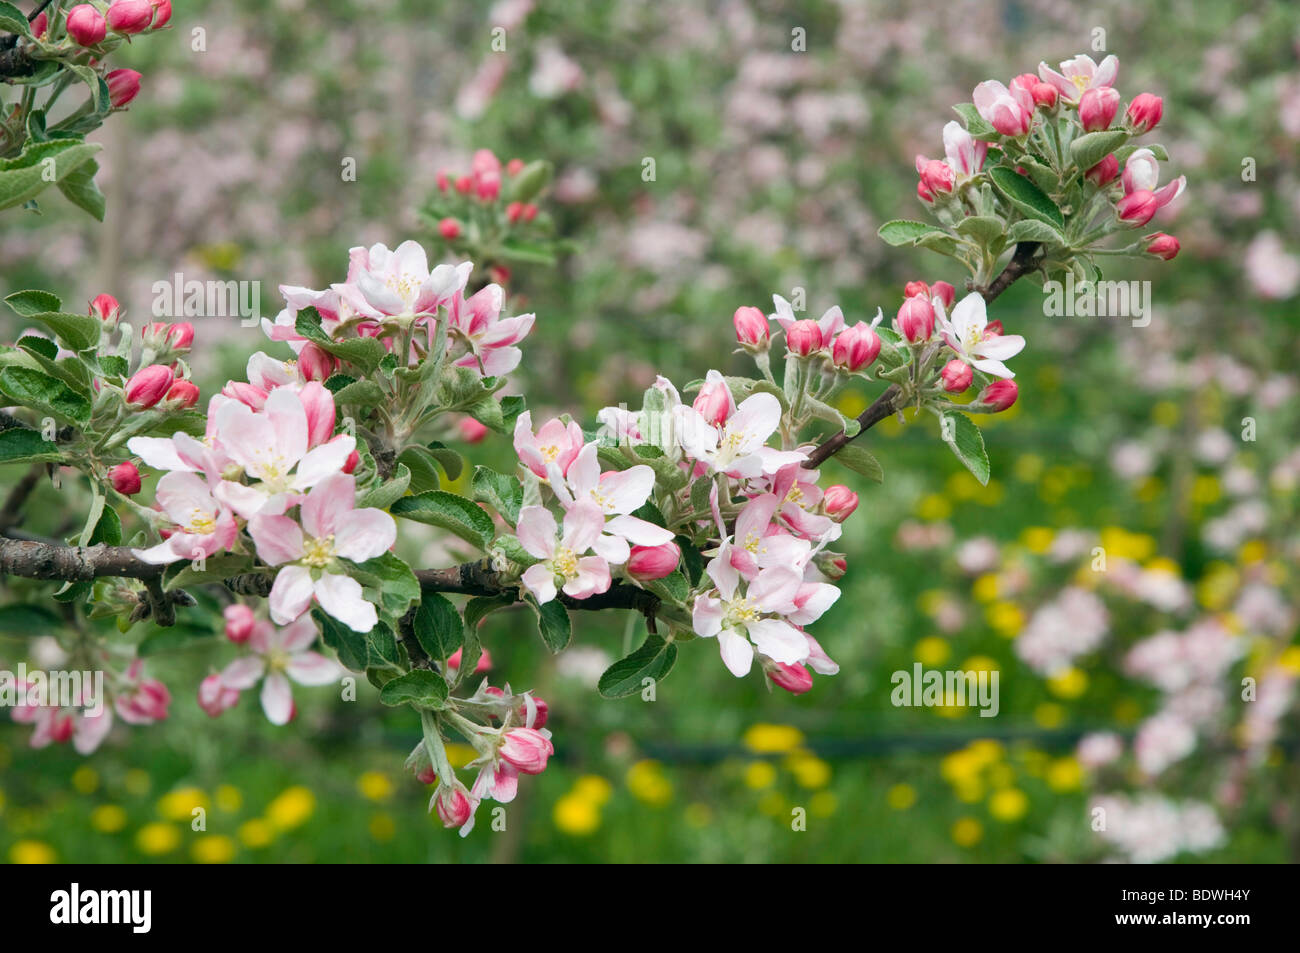 Apple blossom, Scena, Merano country, Trentino, Alto Adige, Italy, Europe Stock Photo